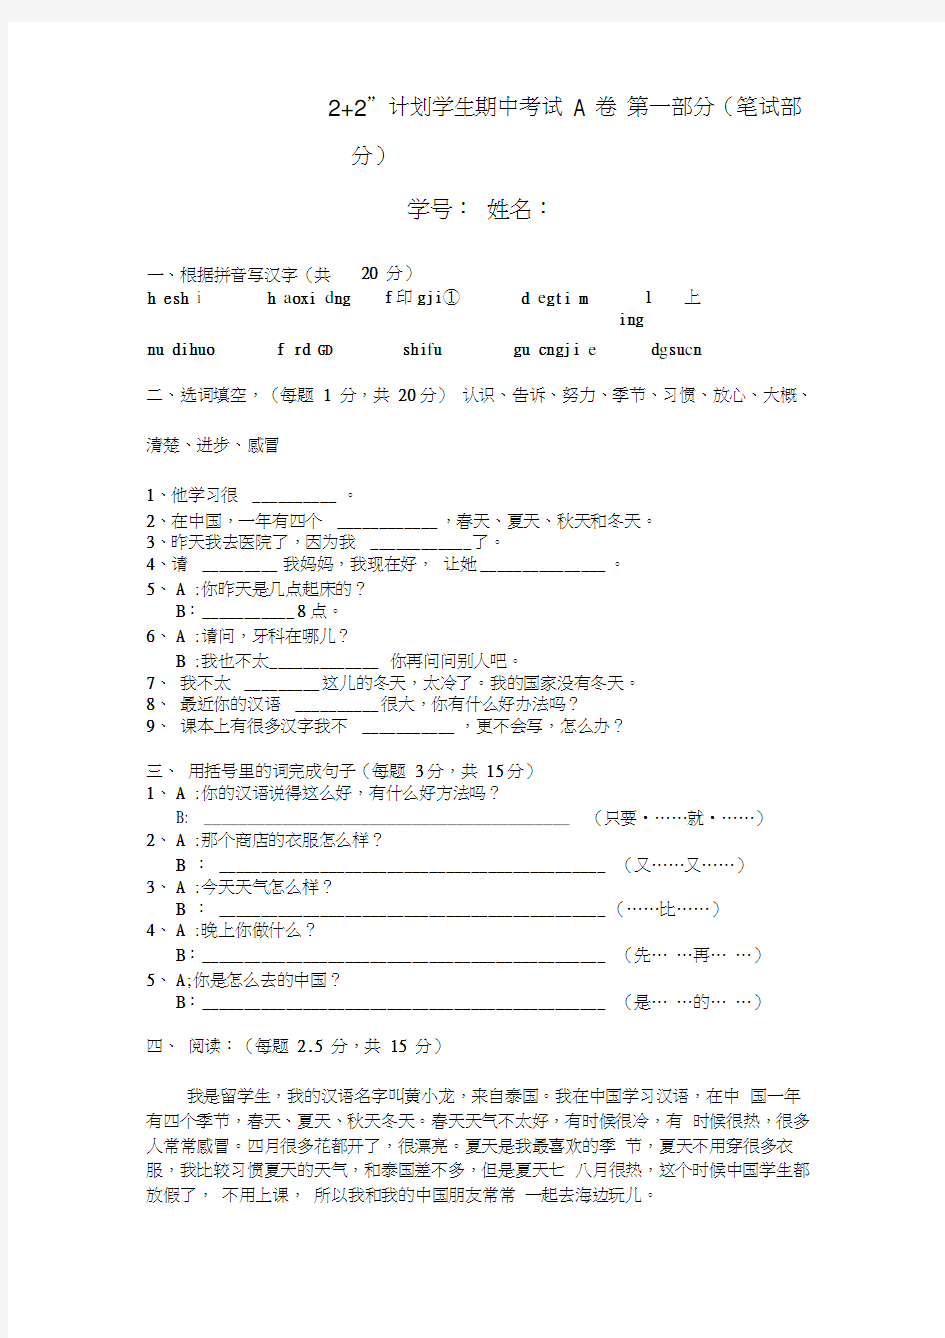 (完整版)初级汉语口语学生考试